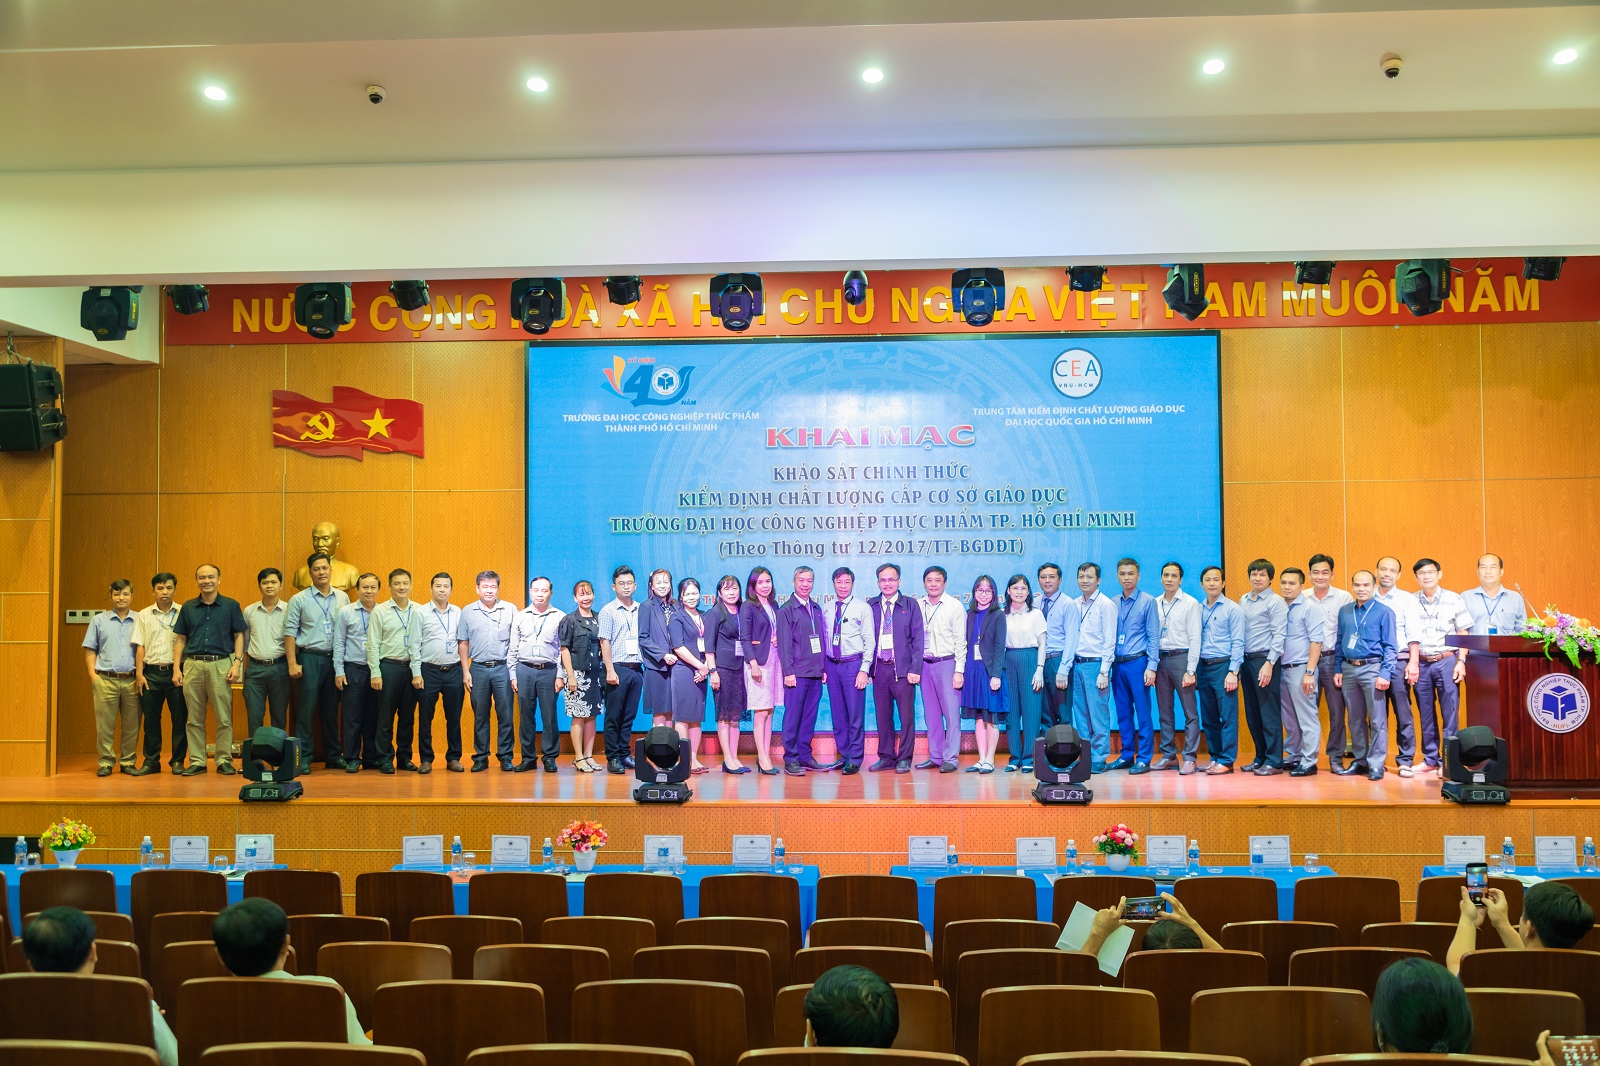 Khai mạc khảo sát chính thức kiểm định chất lượng cấp cơ sở giáo dục chu kỳ 2 tại Trường Đại học Công nghiệp Thực phẩm TP. Hồ Chí Minh